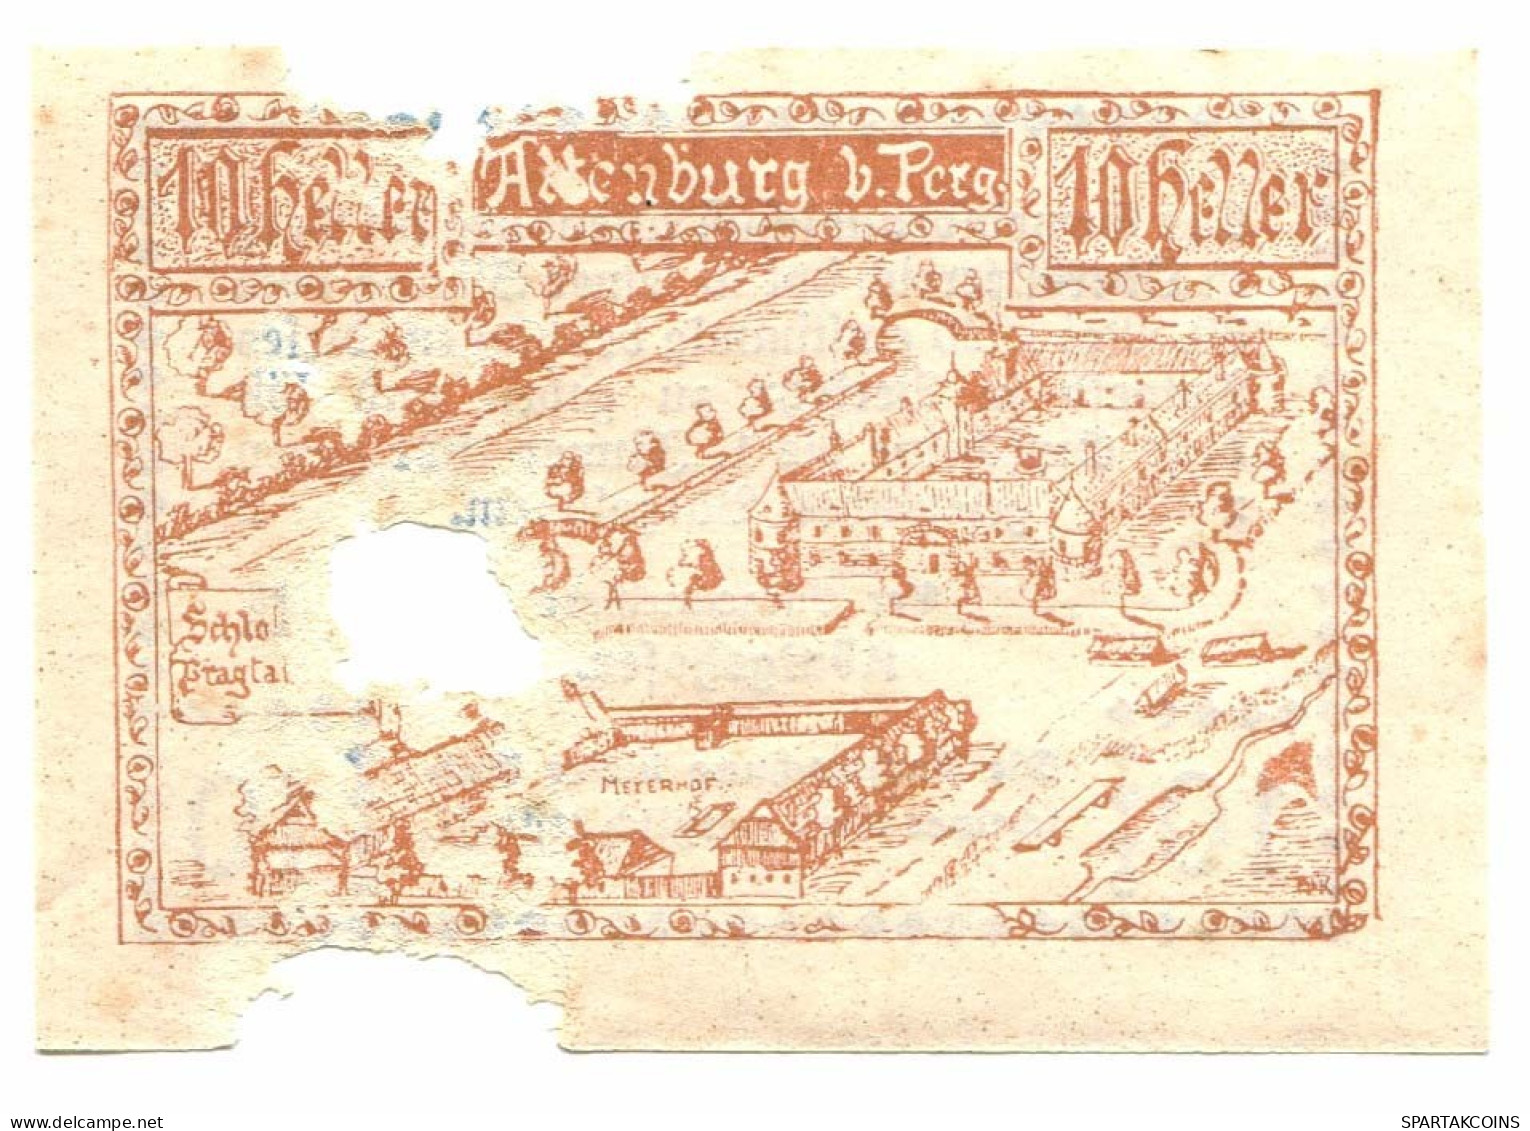 10 Heller 1921 PERG Österreich UNC Notgeld Papiergeld Banknote #P10255 - Lokale Ausgaben